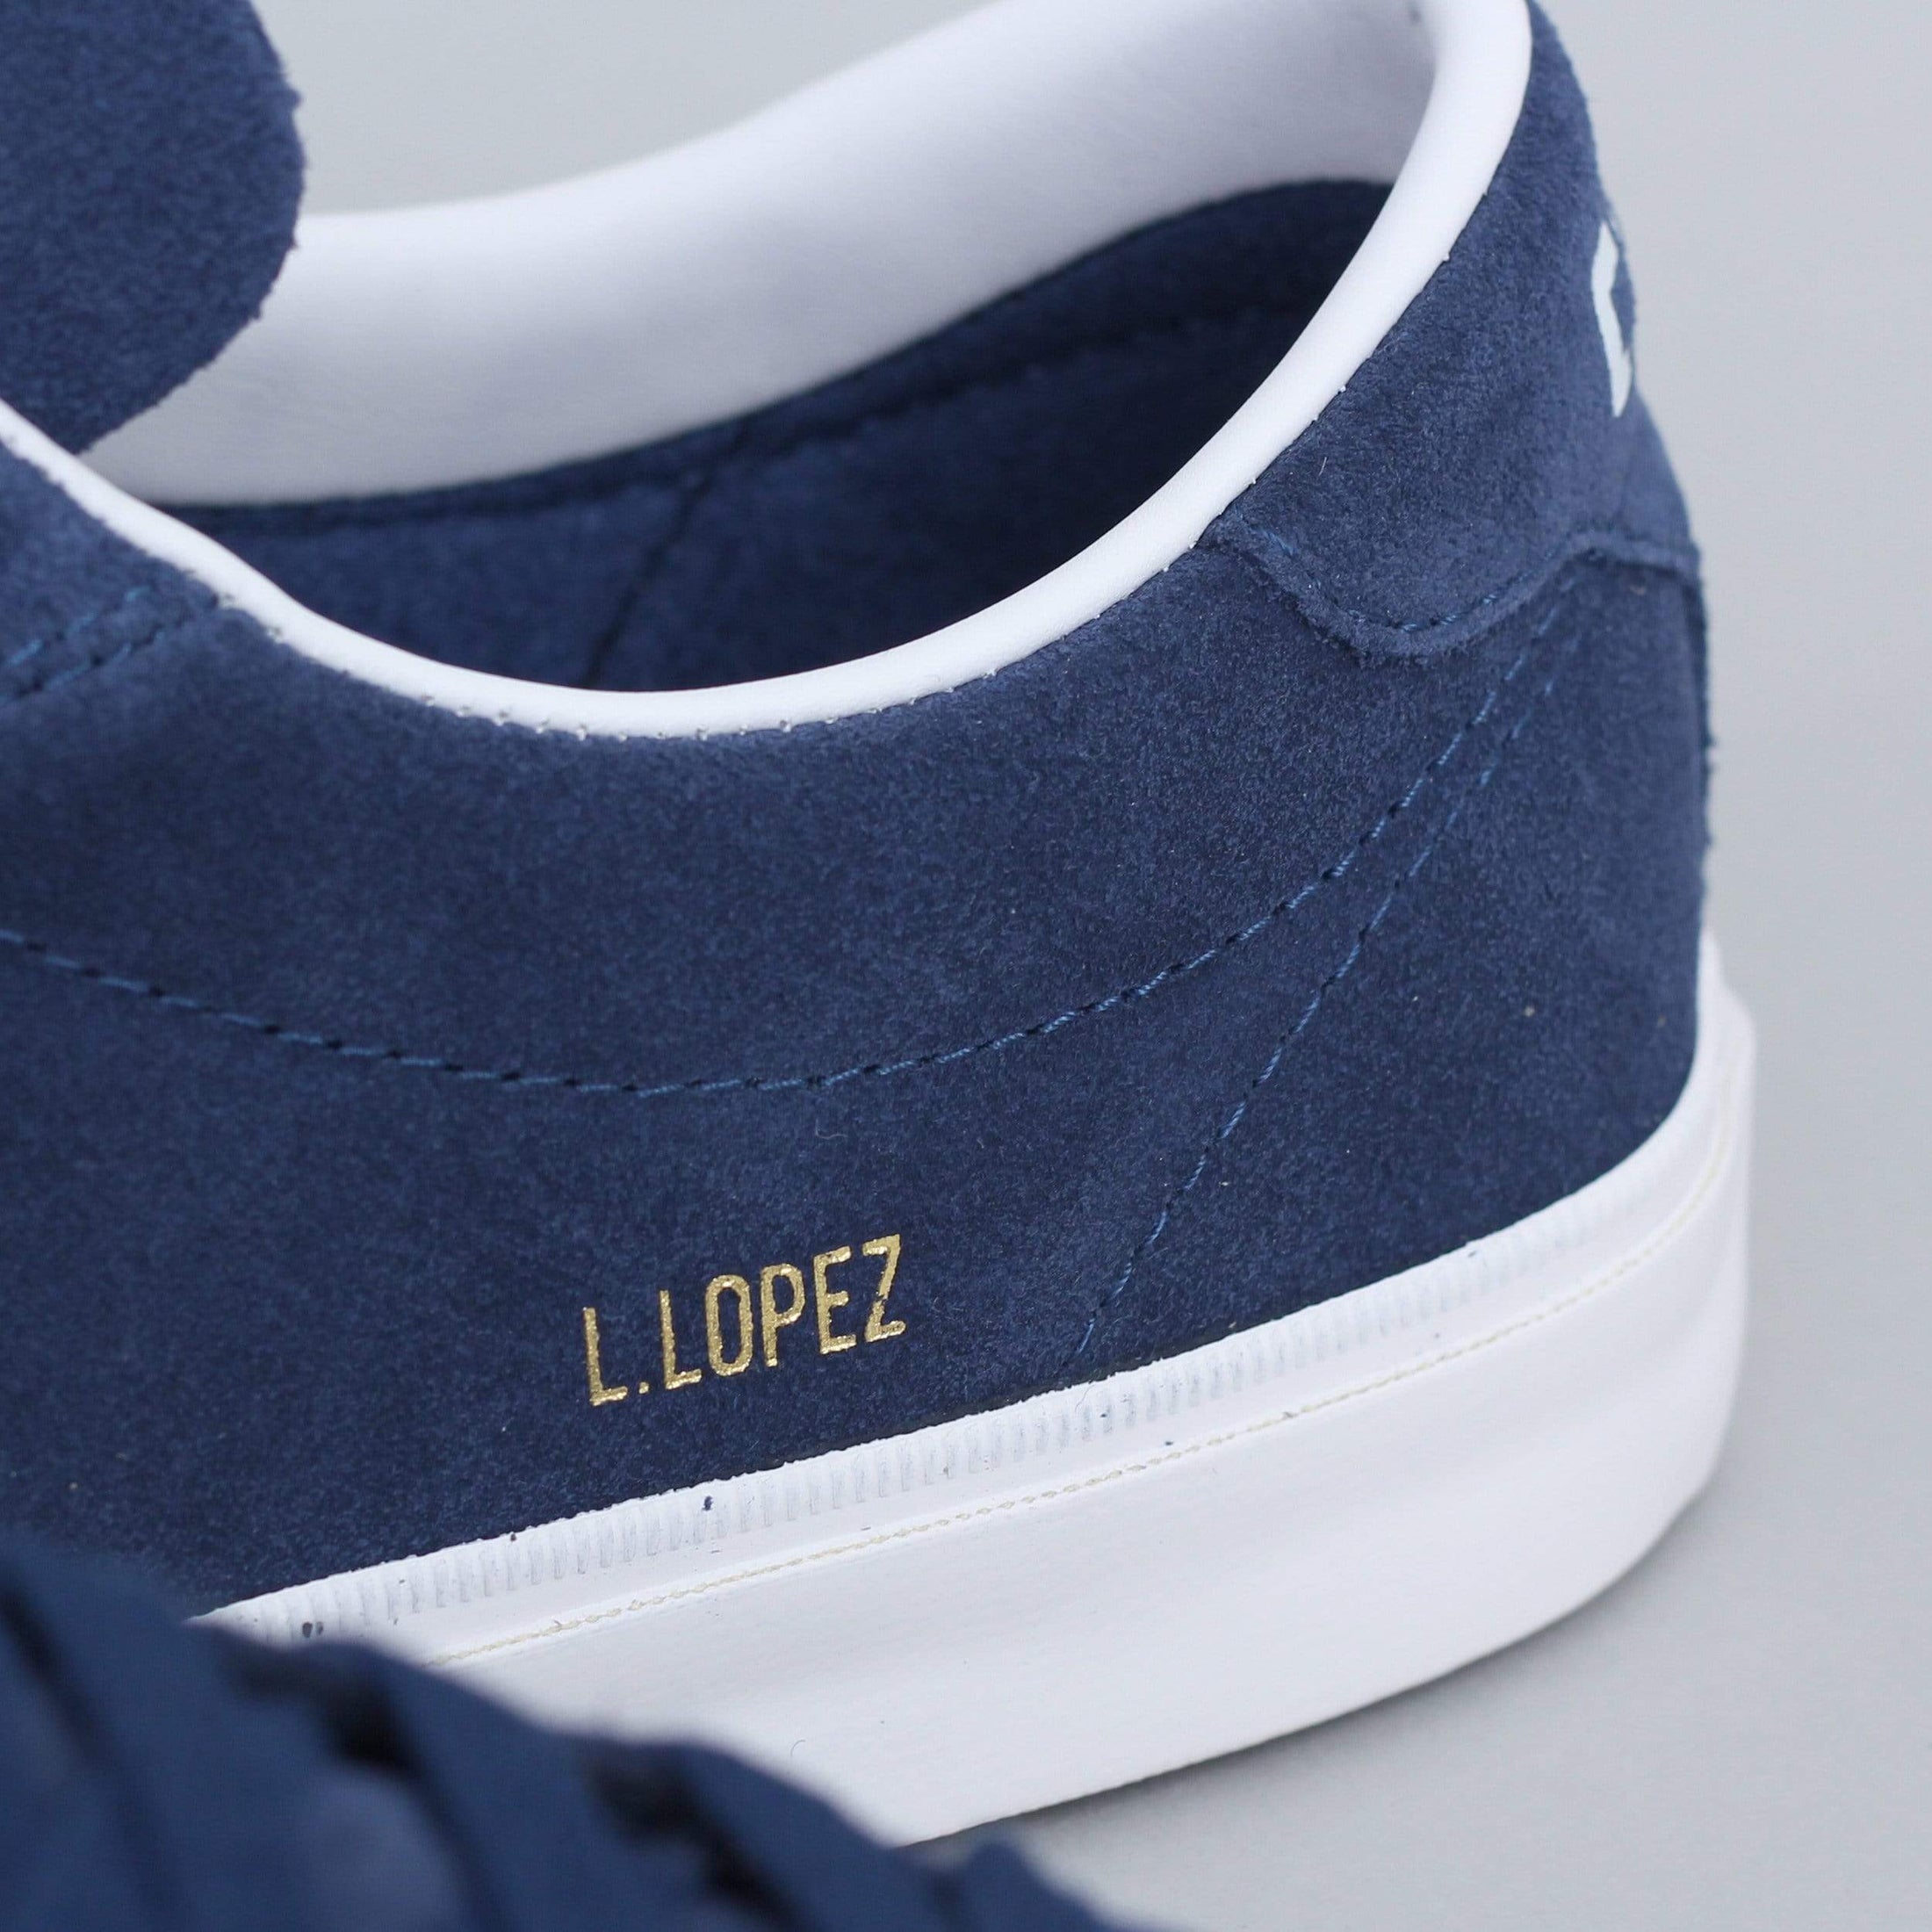 Converse Louie Lopez Pro OX Shoes Navy / White / Gum